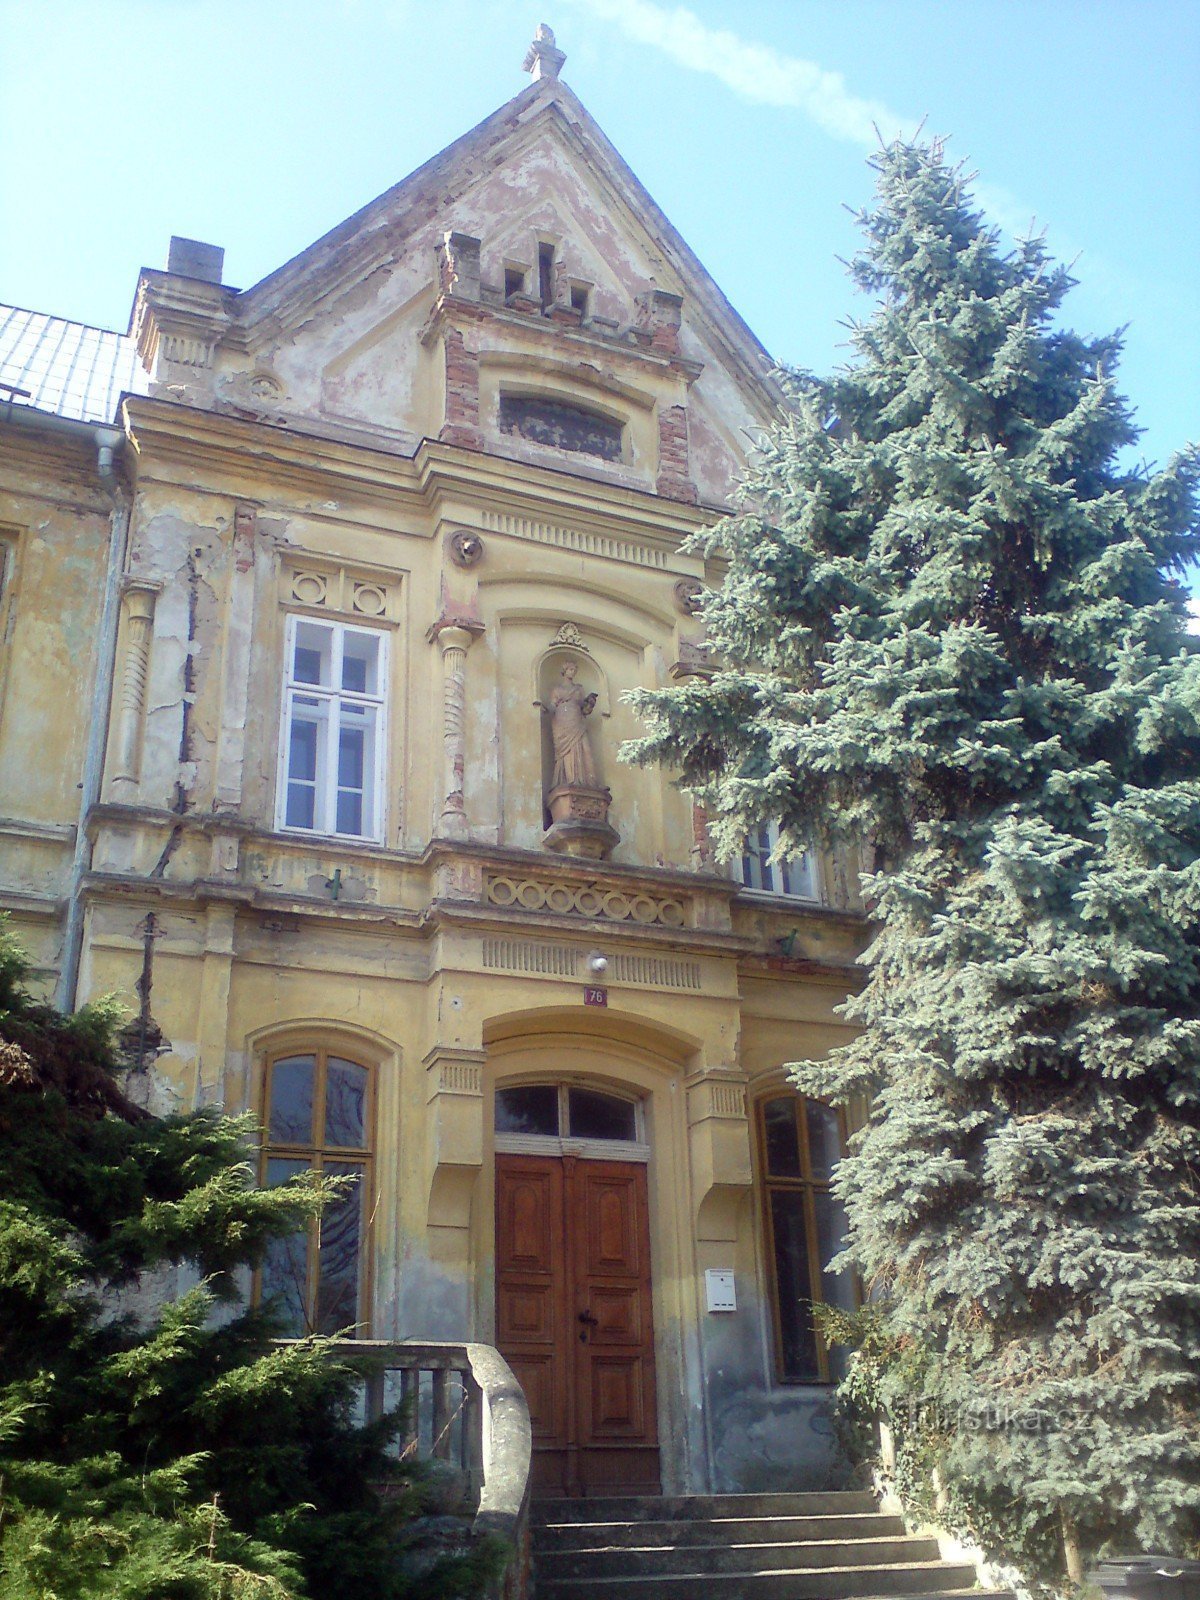 la facciata e l'ingresso principale dell'edificio scolastico - un abete argentato a destra decora lo scalone, n